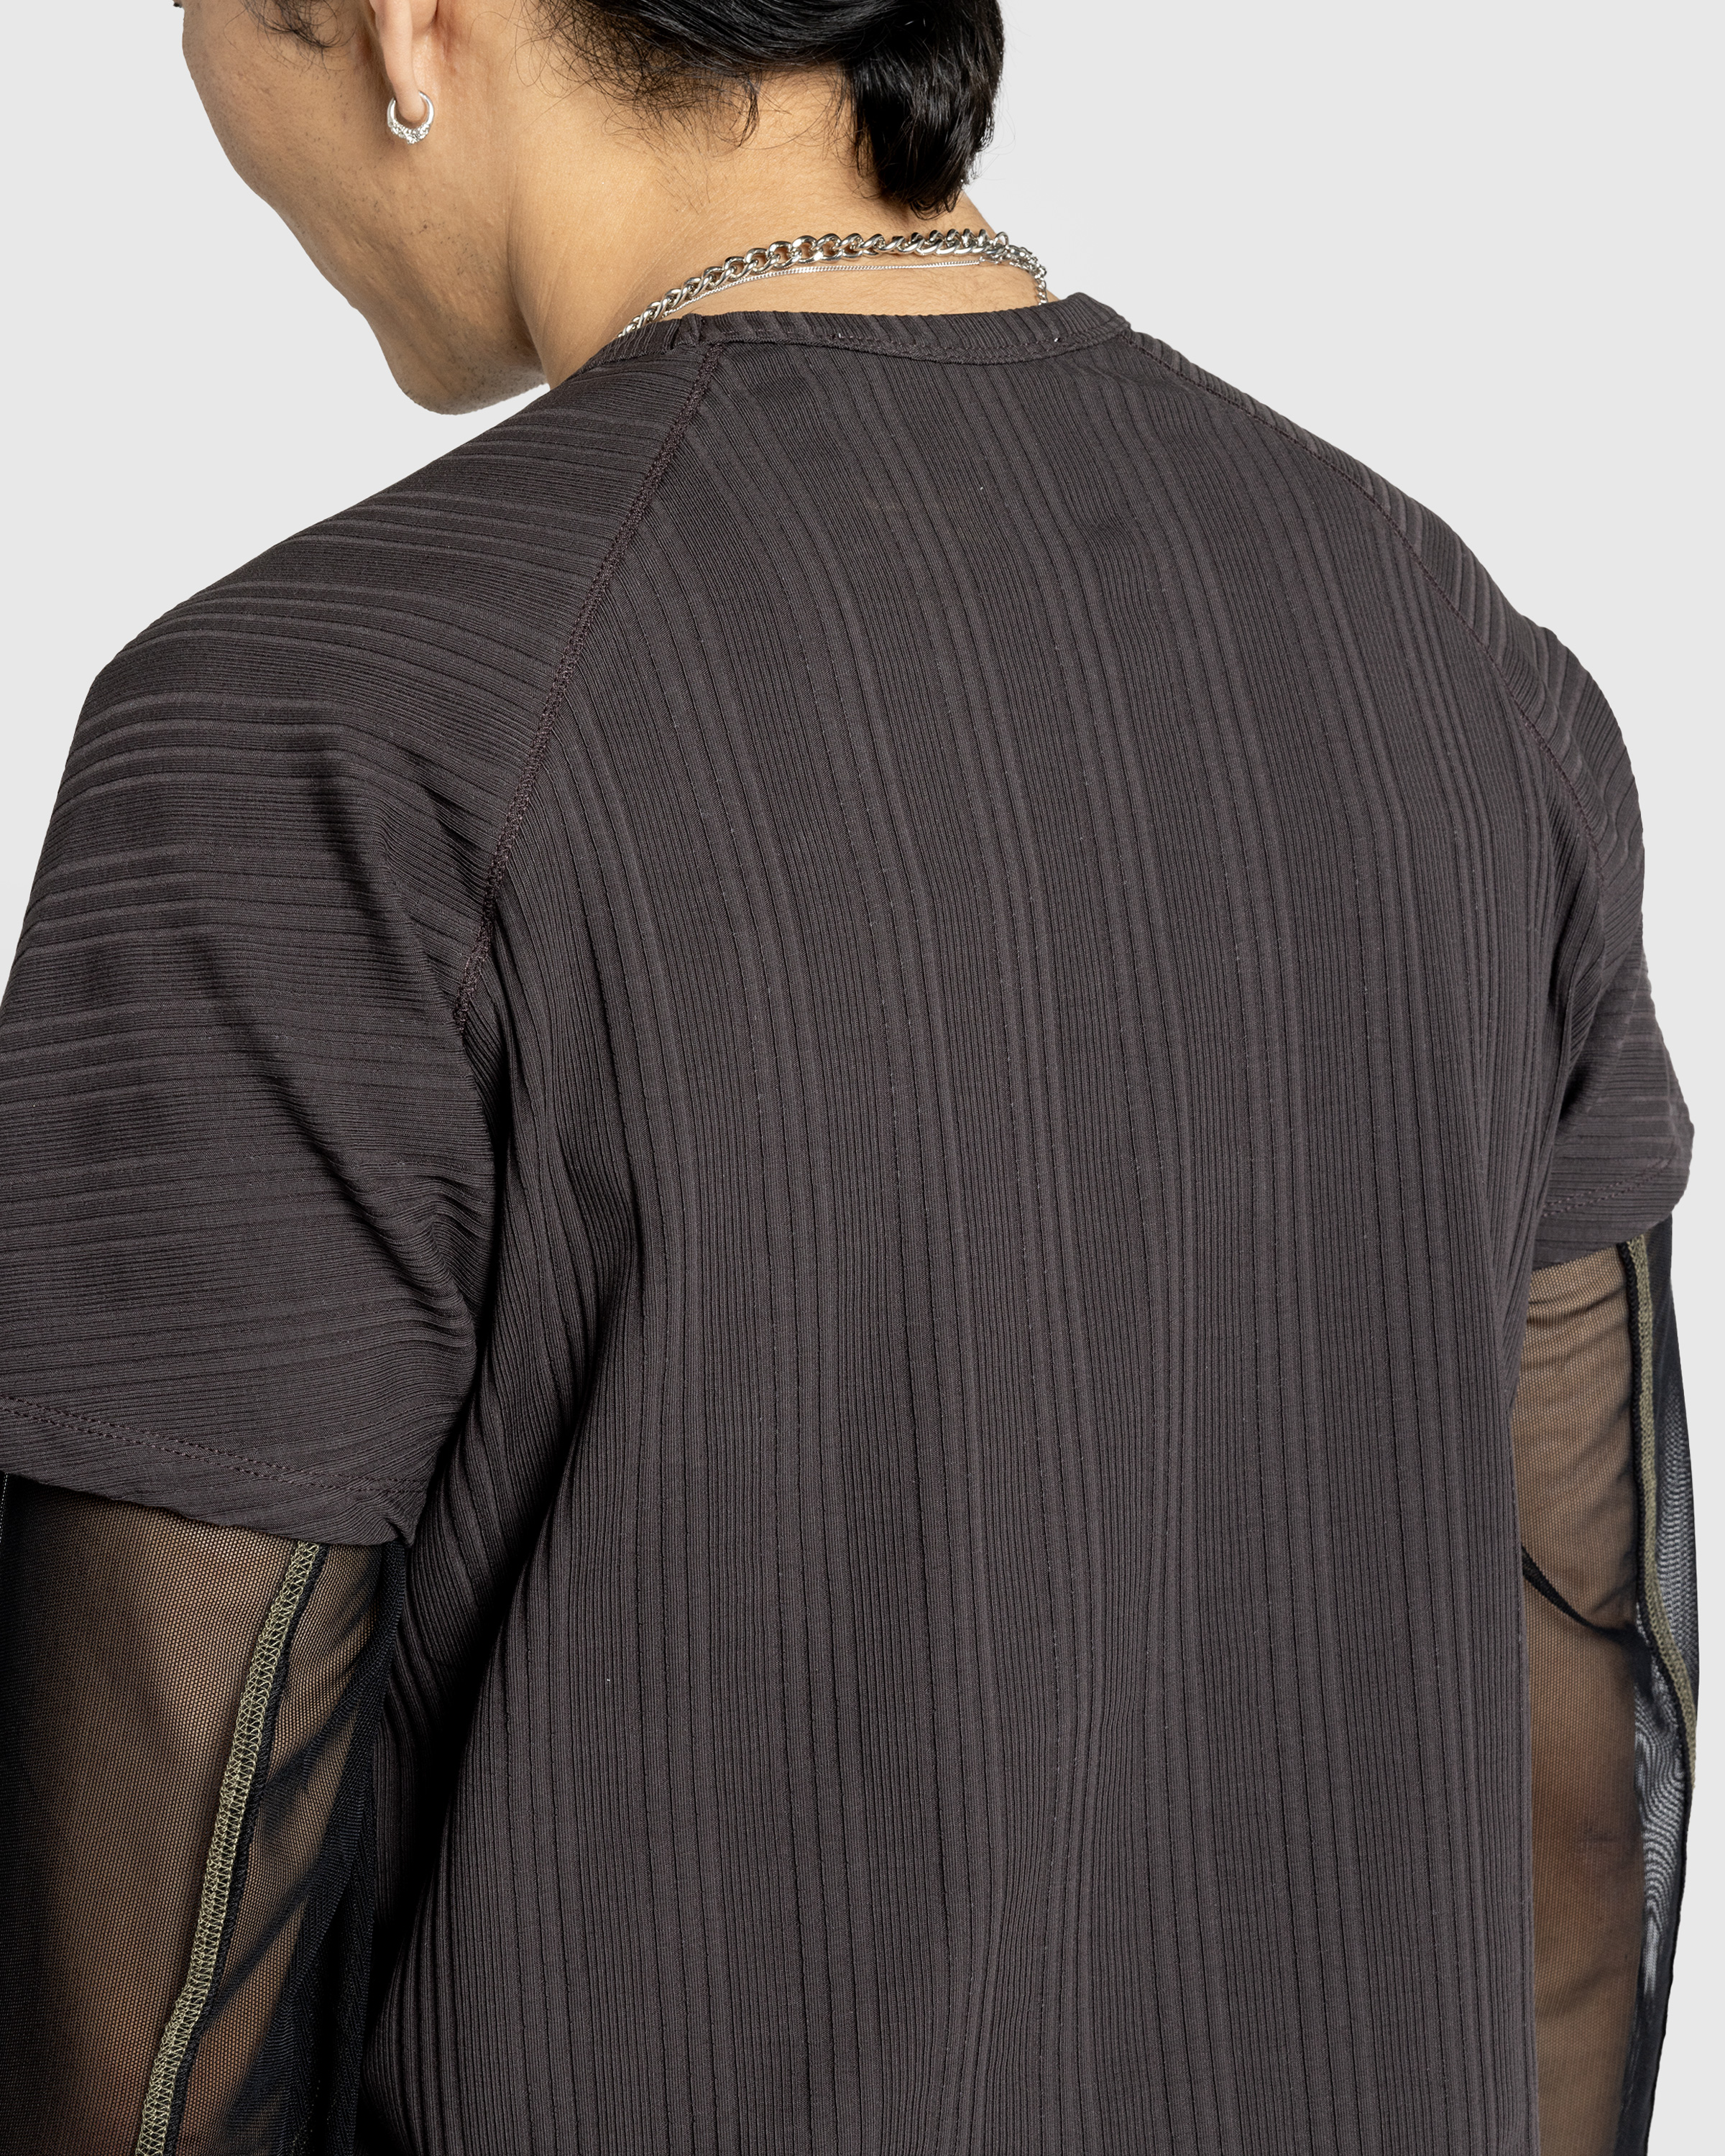 AFFXWRKS – Shoulderless T-Shirt Shale Brown - T-Shirts - Brown - Image 5